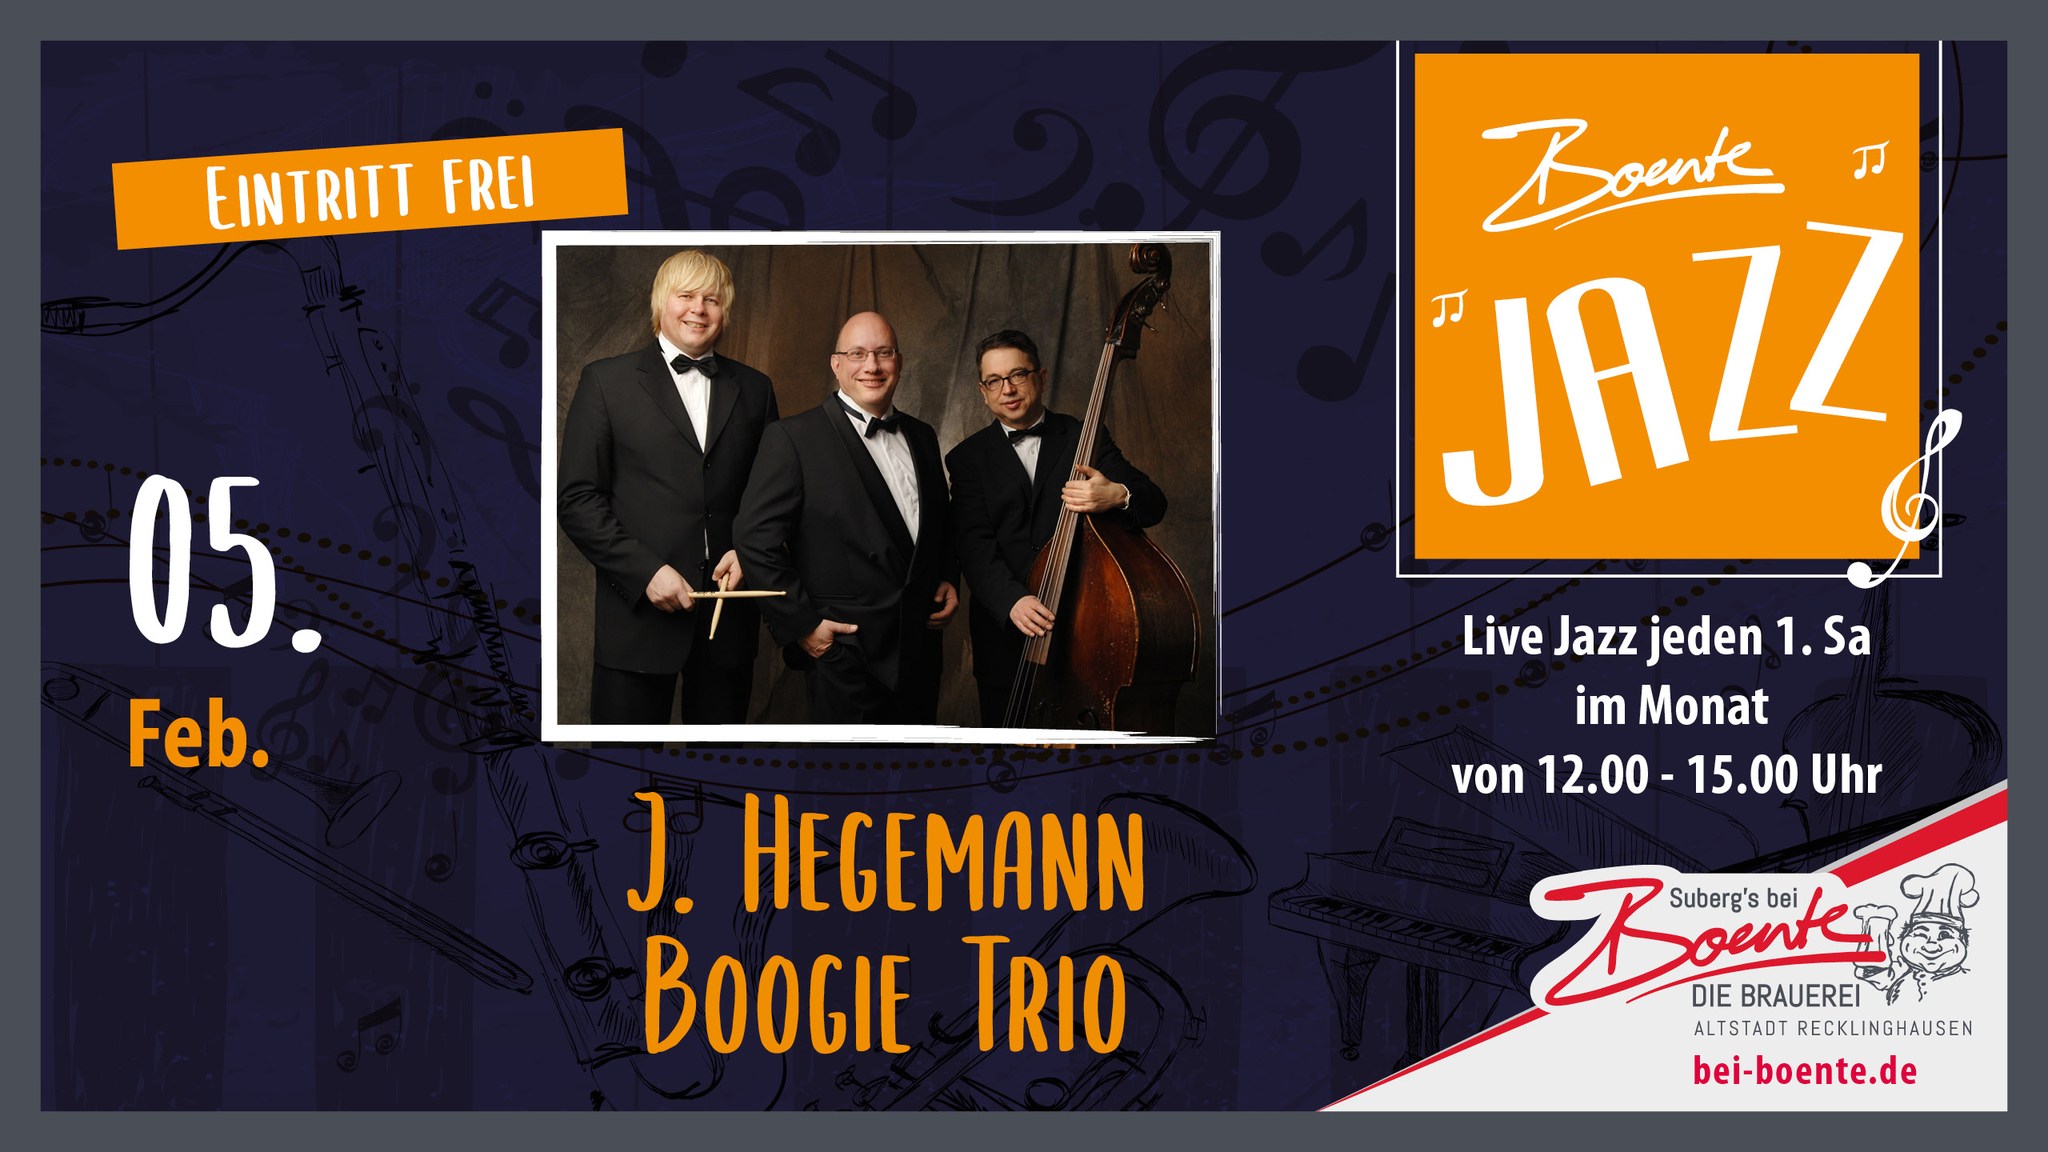 BoenteJazz - J. Hegemann Boogie Trio